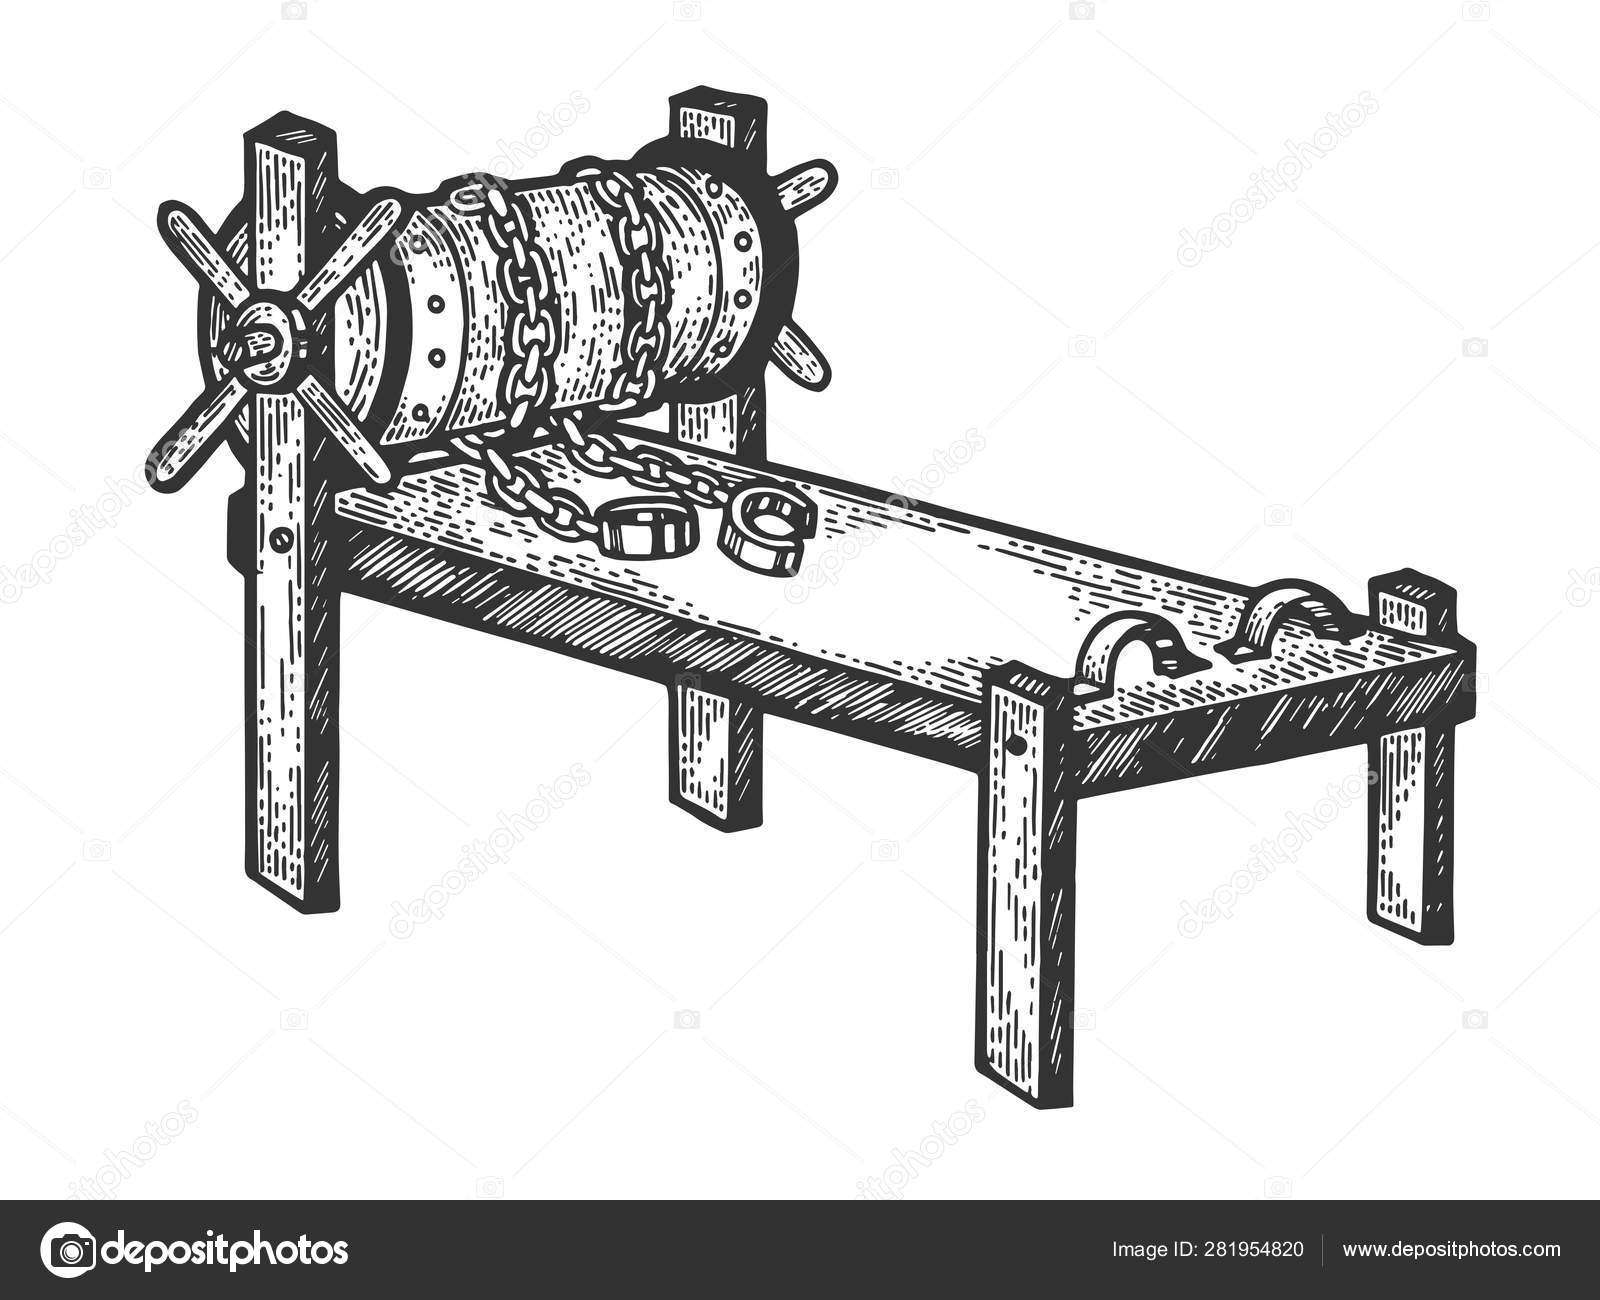 Rack medieval torture device sketch engraving vector illustration ...